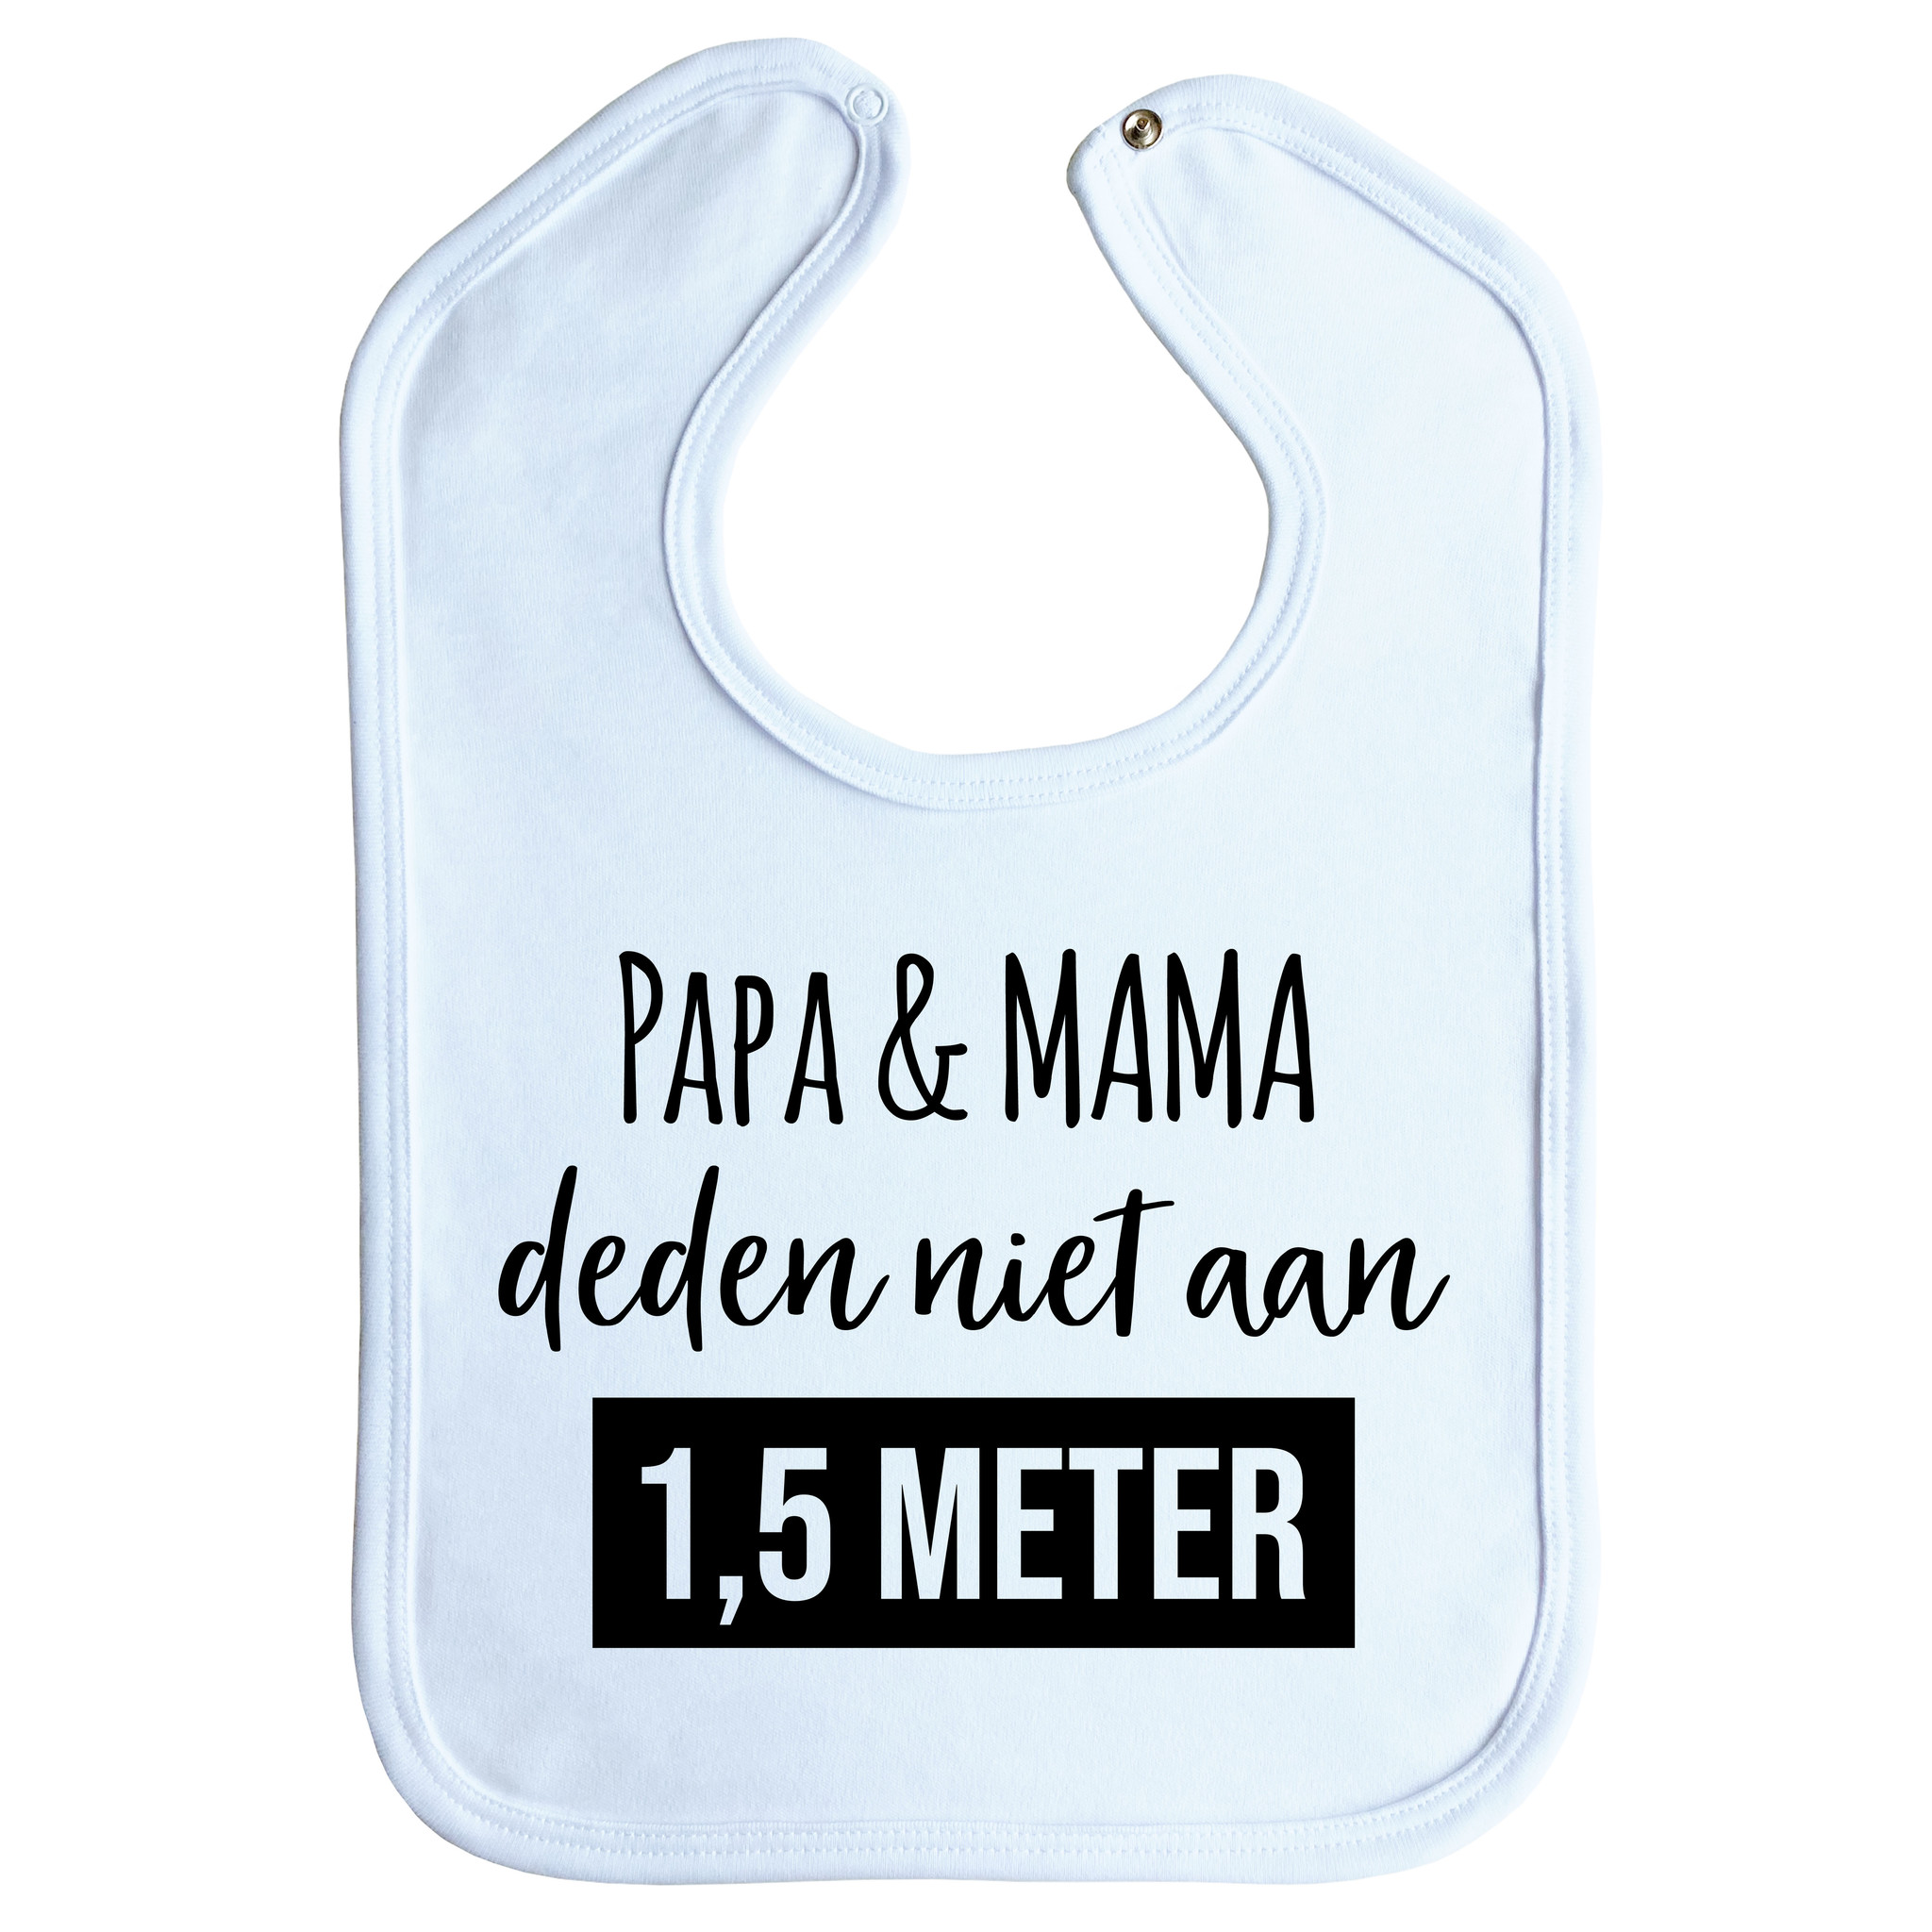 Goed Teken een foto terras Slab - Papa & mama deden niet aan 1,5 meter - drukknoop - baby blauw -  Goldengifts.nl